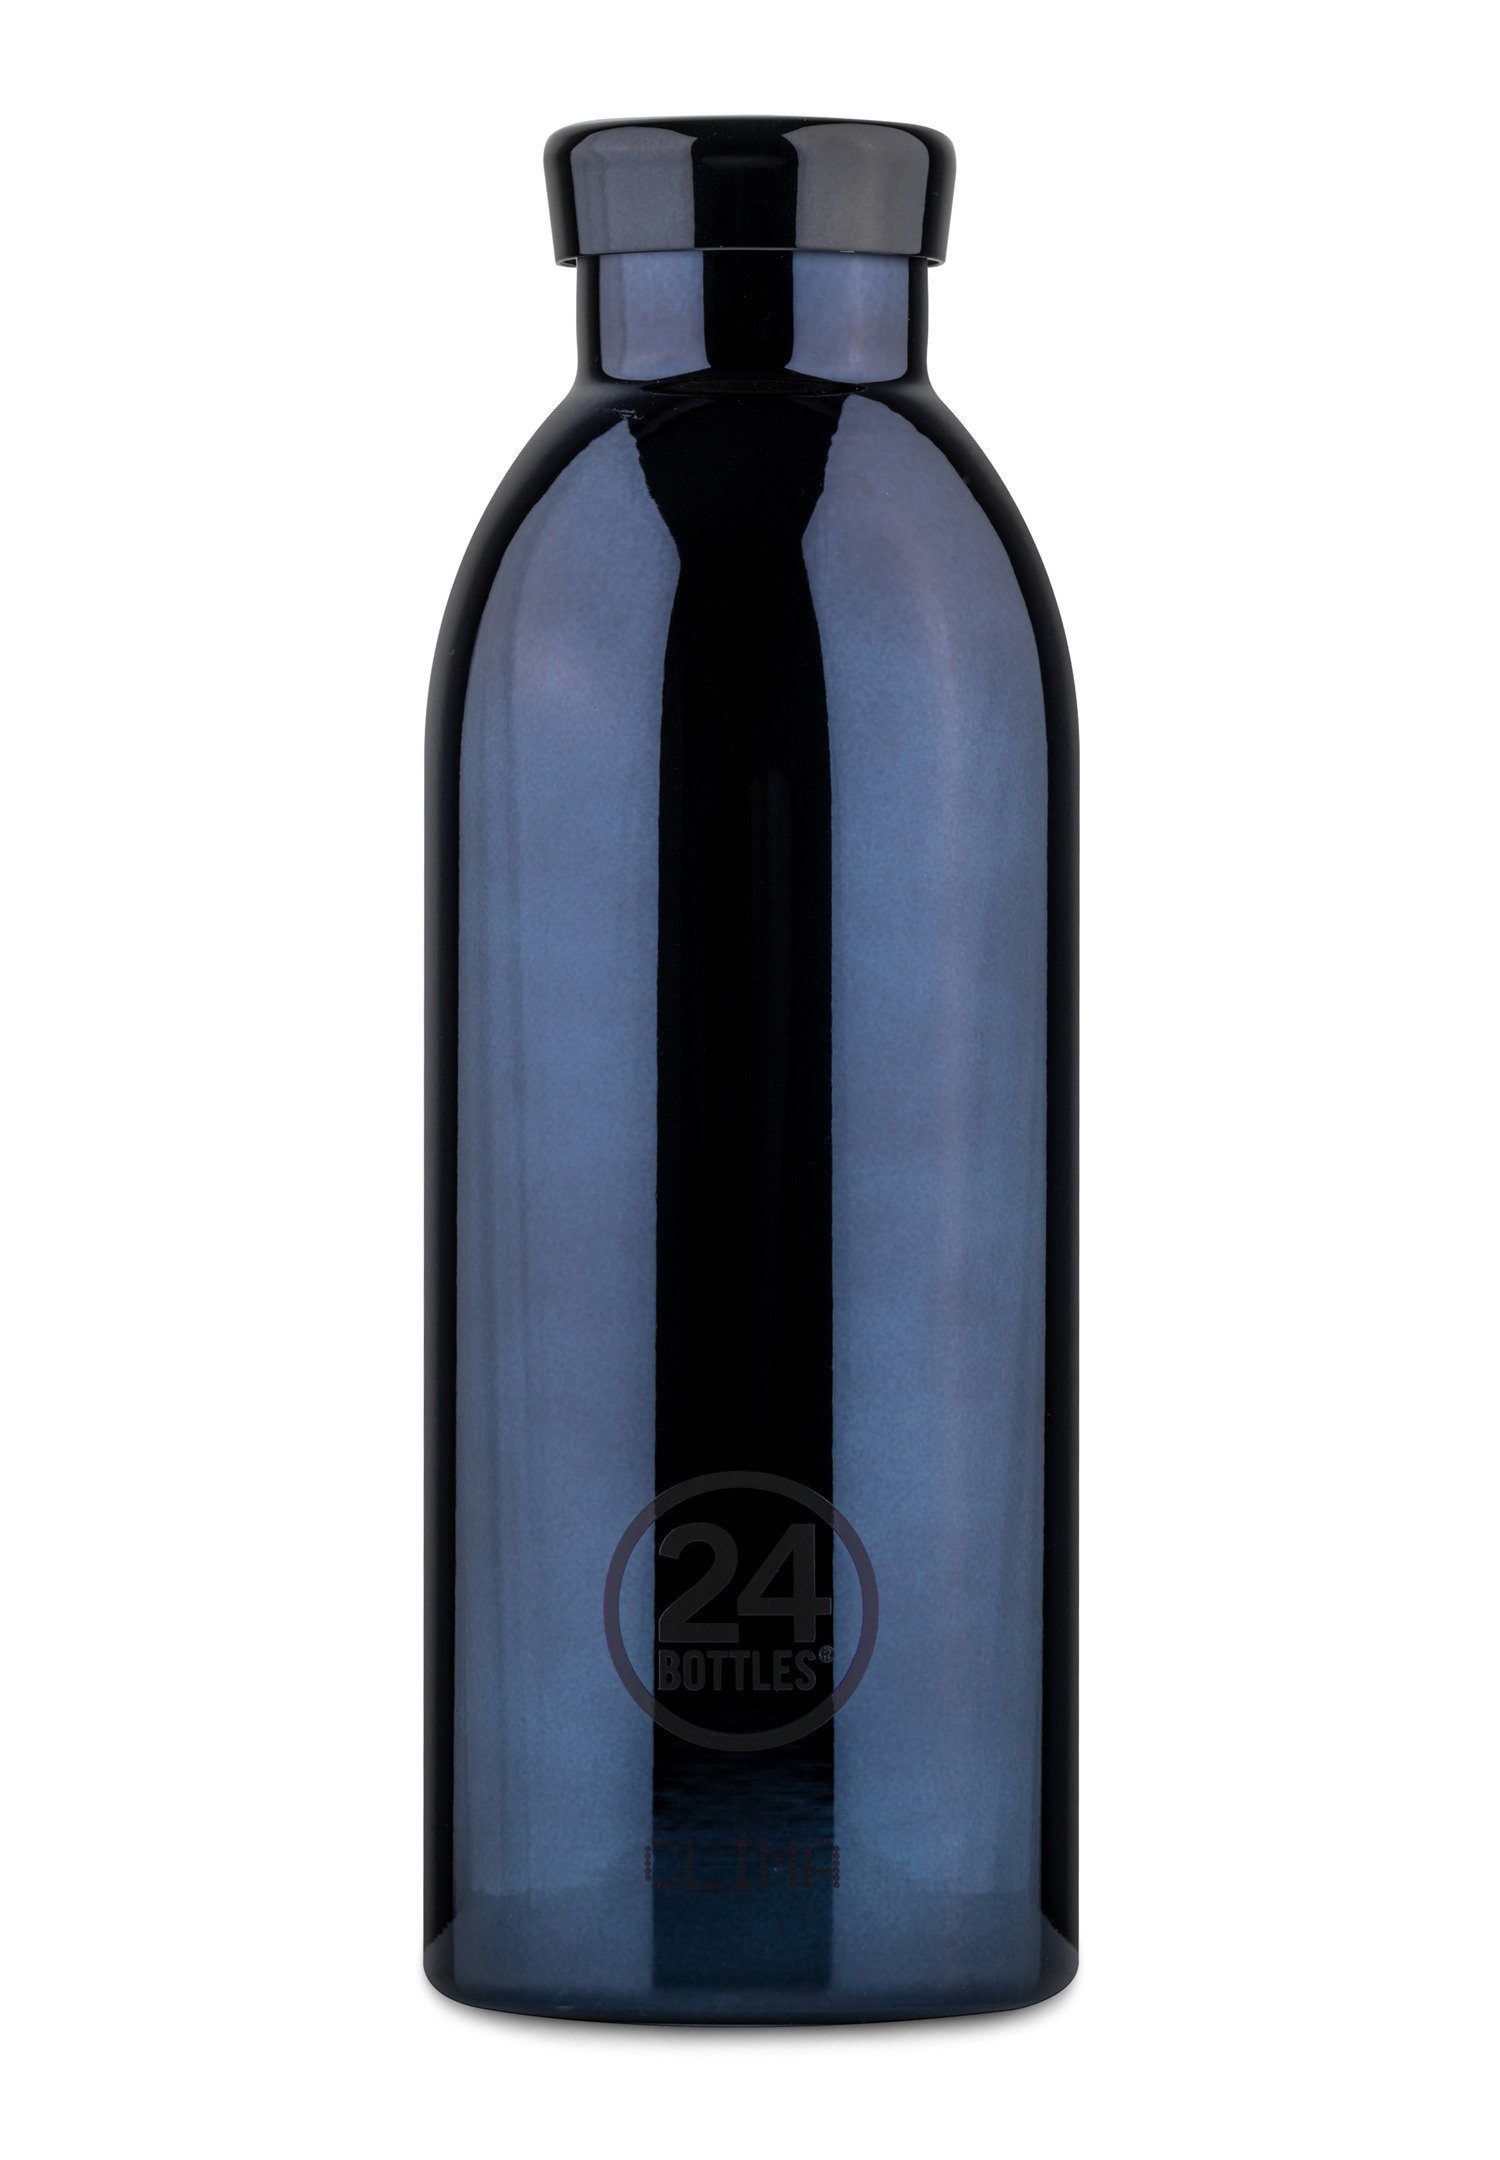 Bottles 24 Black Trinkflasche Radiance